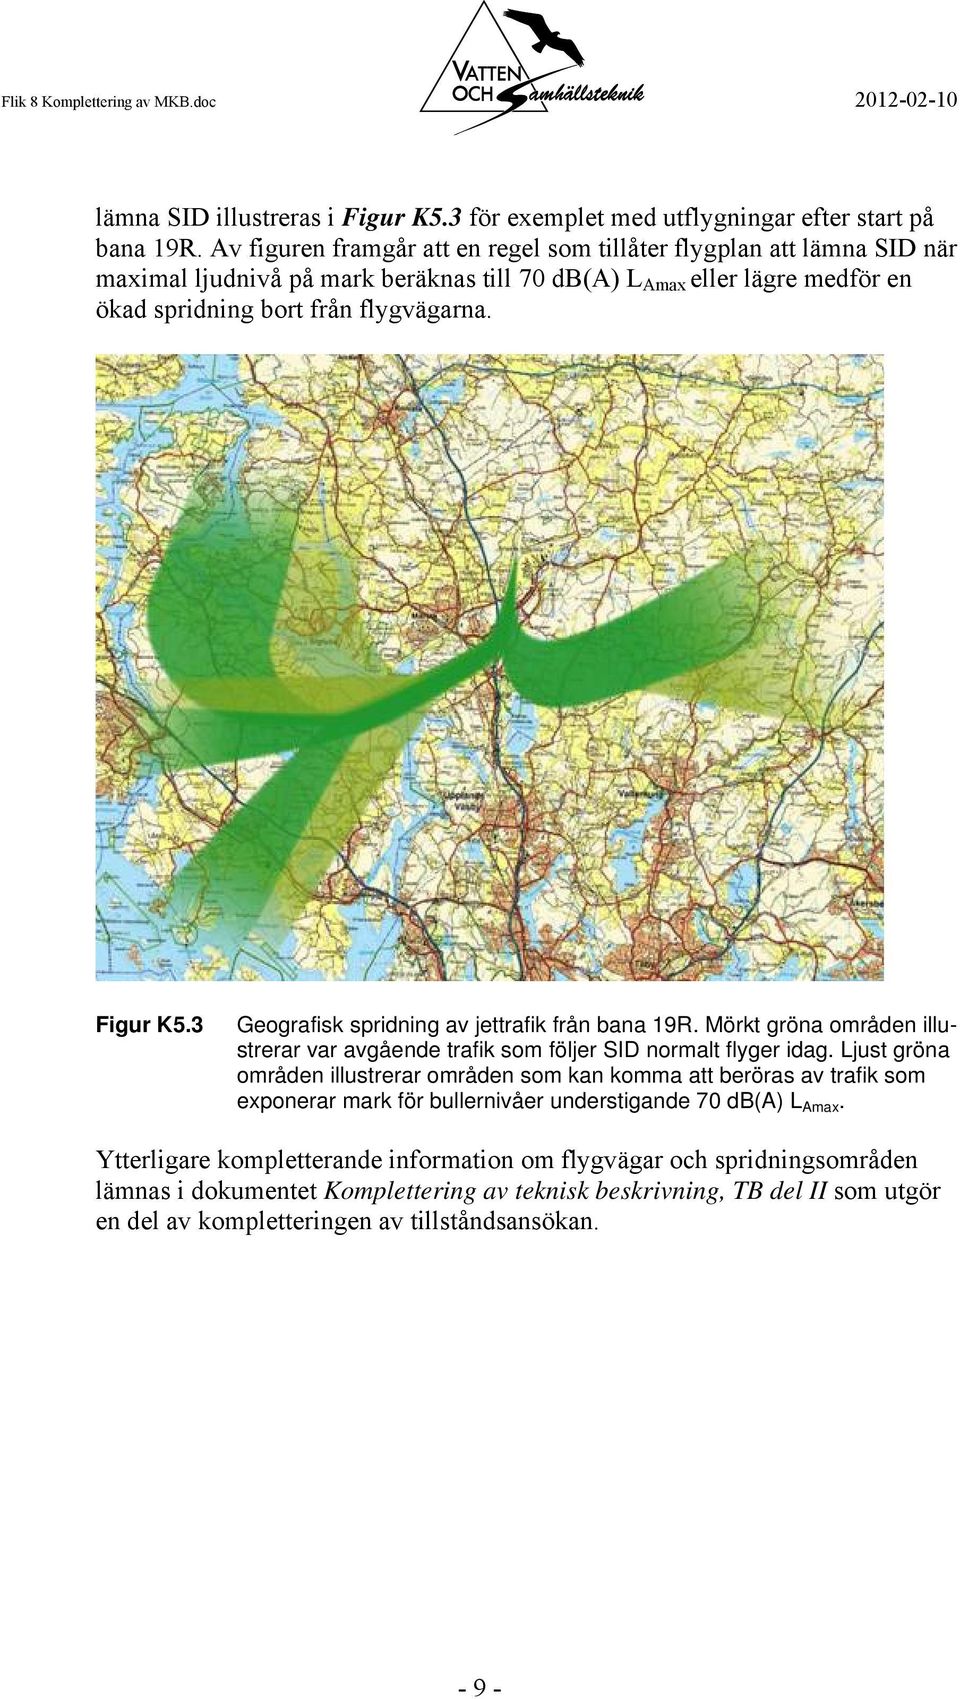 3 Geografisk spridning av jettrafik från bana 19R. Mörkt gröna områden illustrerar var avgående trafik som följer SID normalt flyger idag.